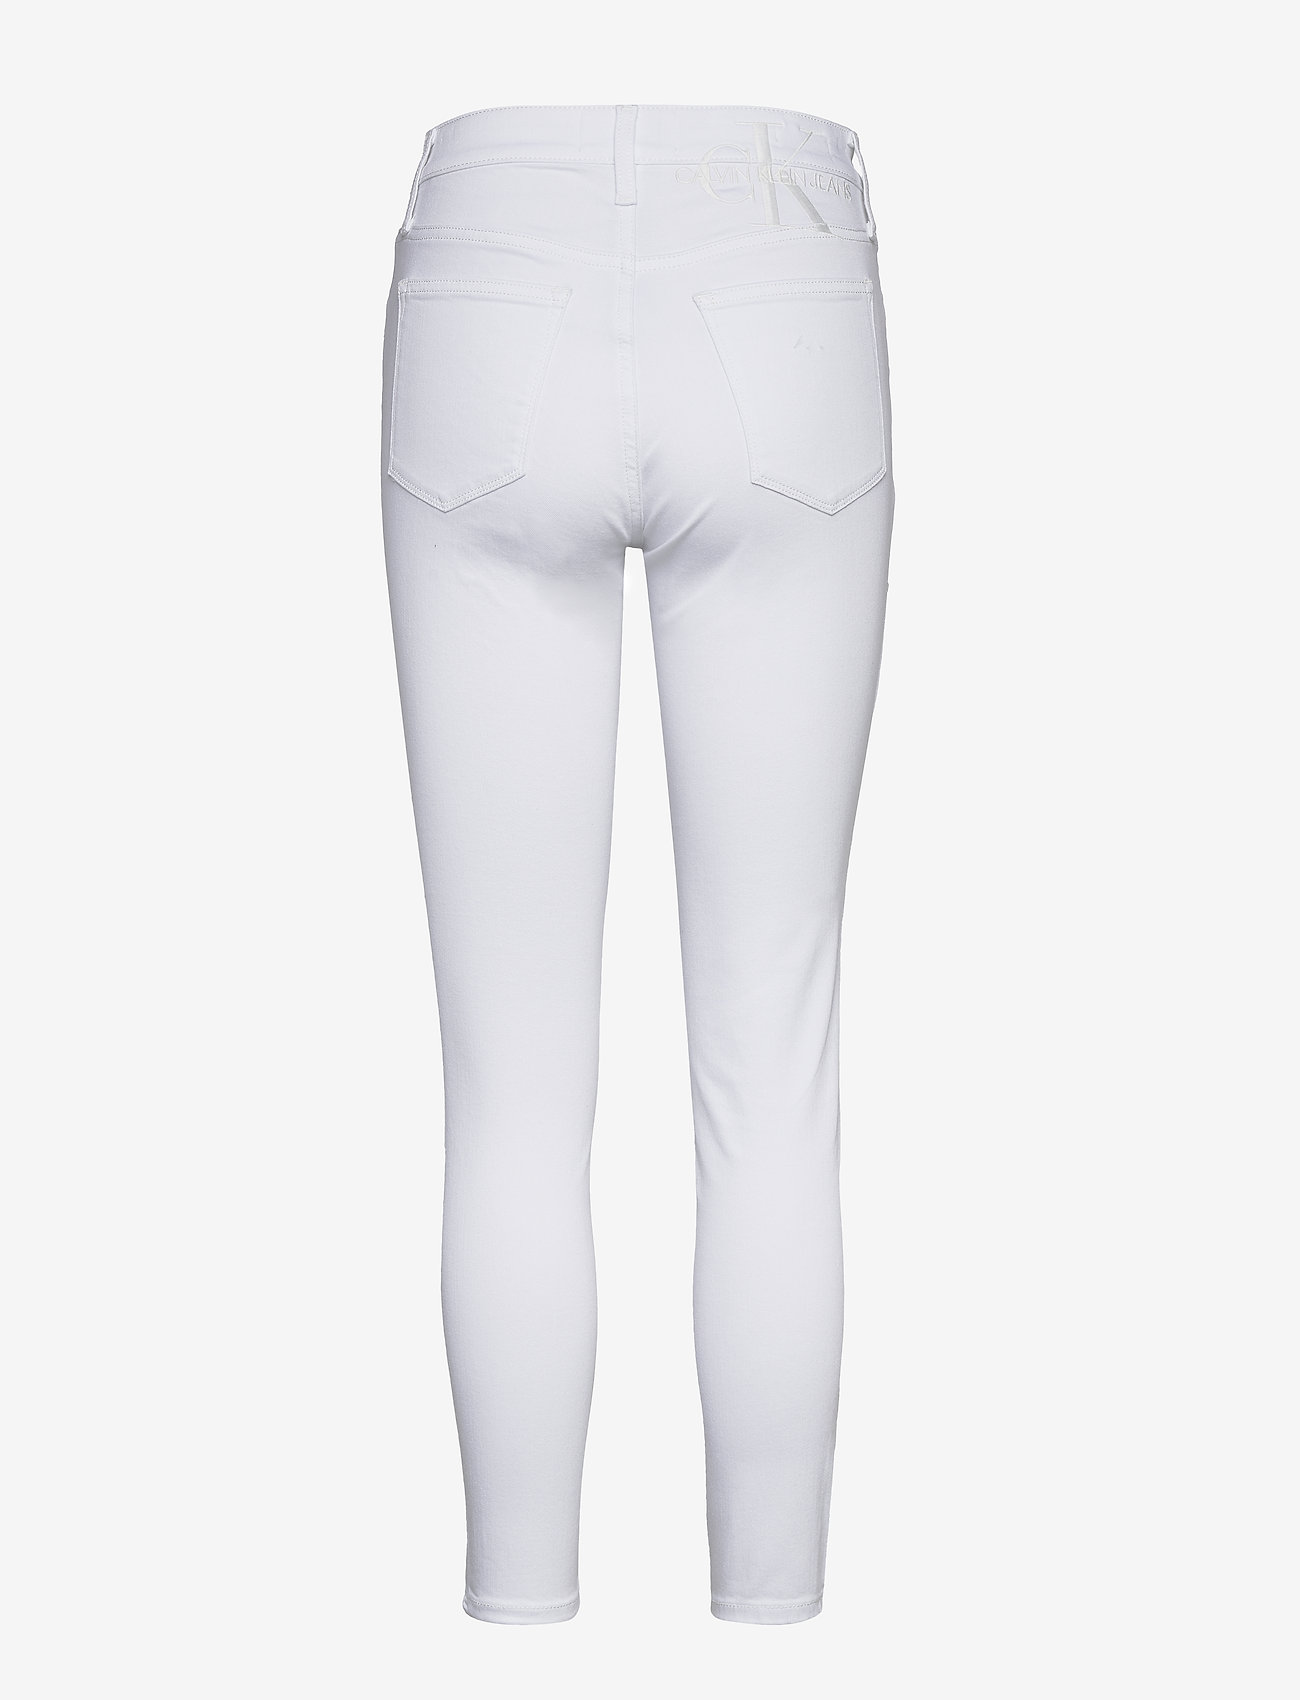 calvin klein white jeans